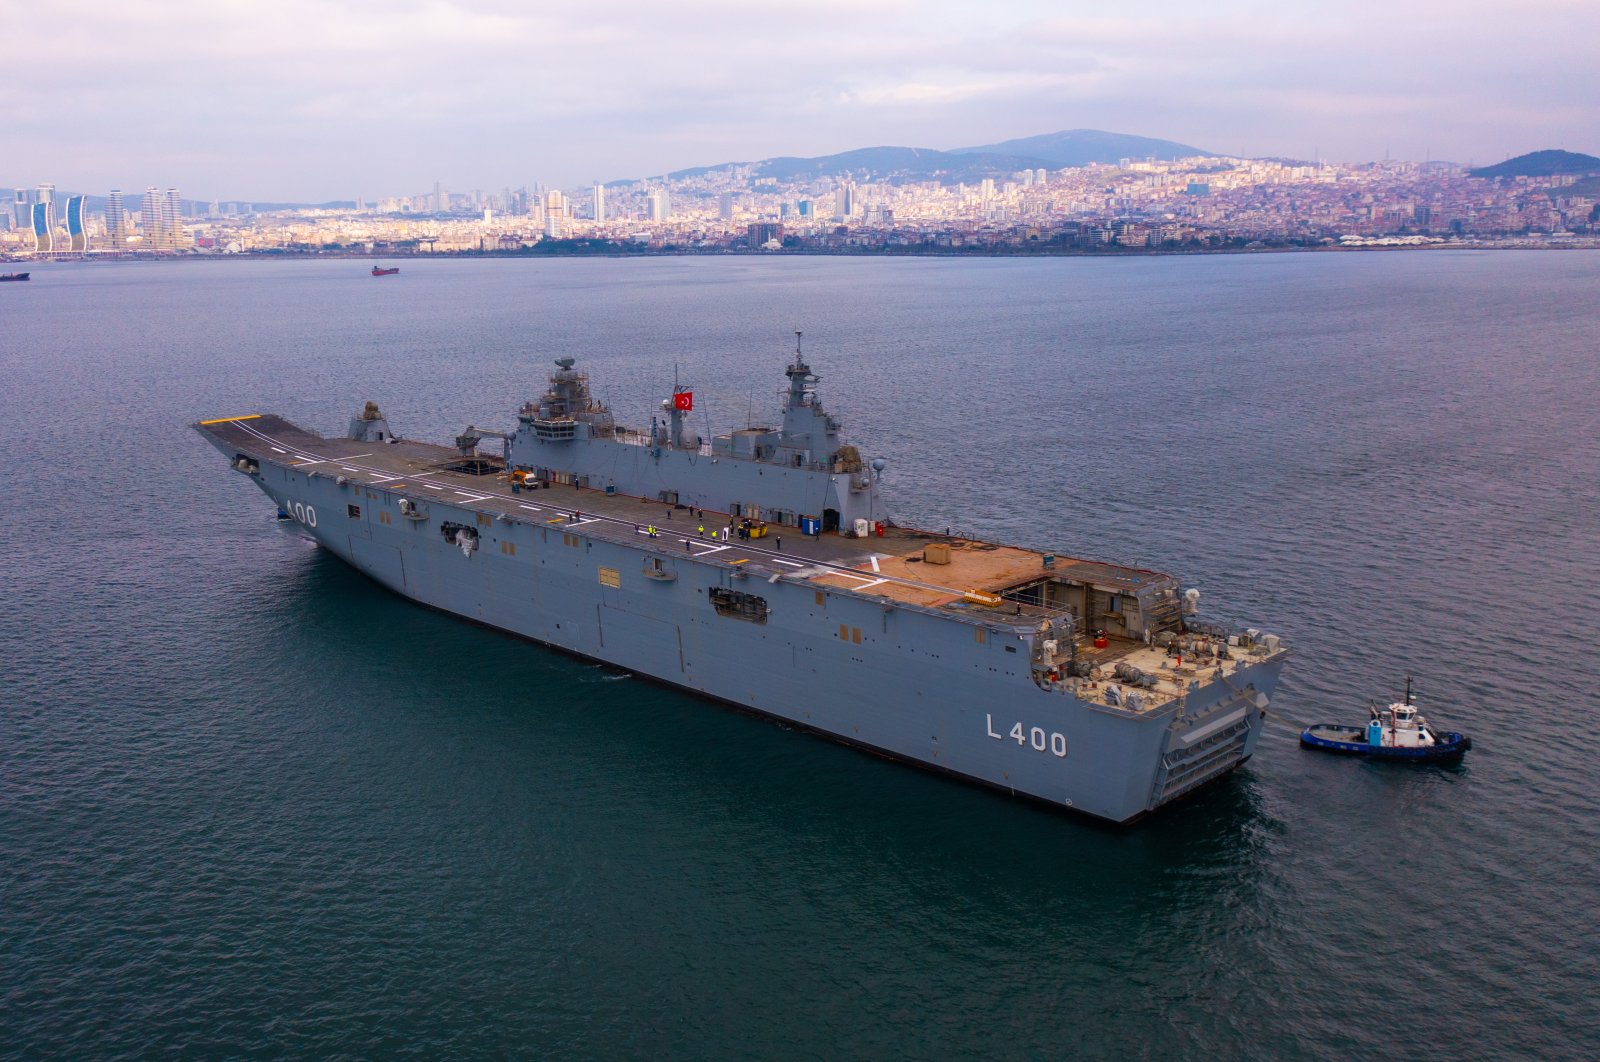 Türkiye menugaskan kapal perang terbesarnya, kapal induk drone pertama di dunia